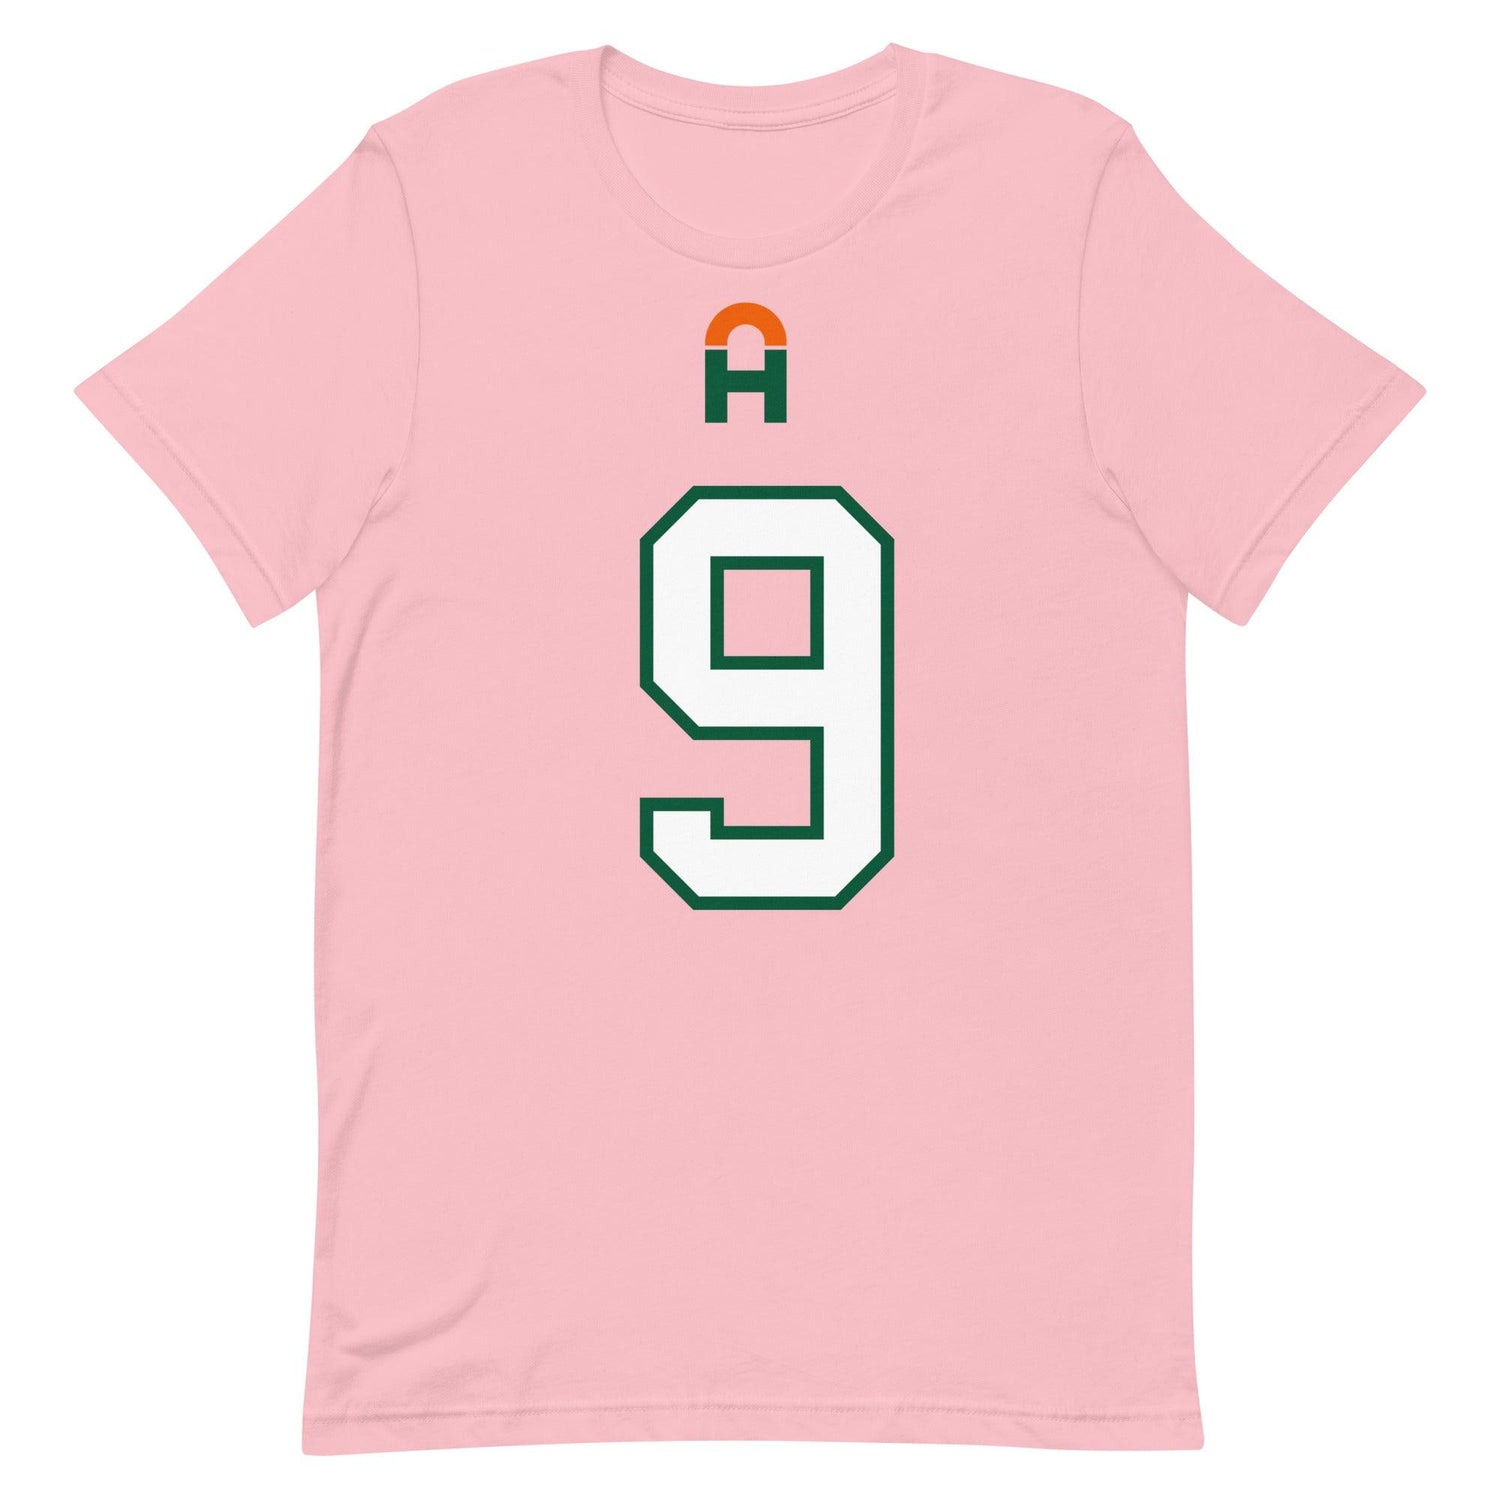 Avery Huff Jr. "Jersey" t-shirt - Fan Arch